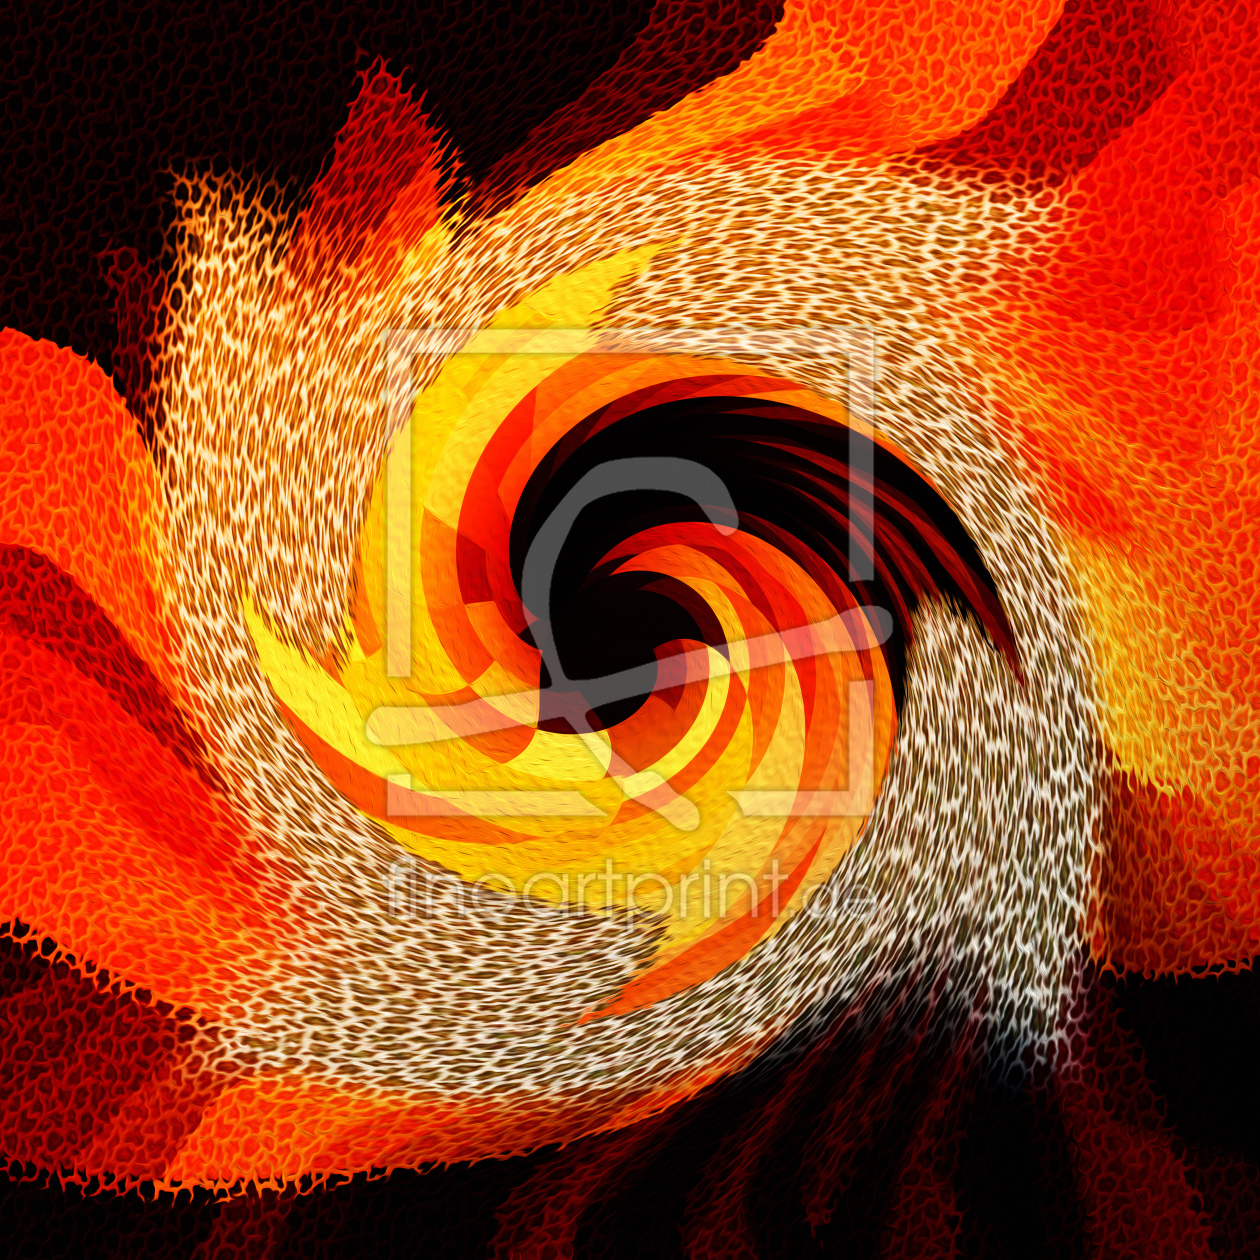 Bild-Nr.: 10849165 Feuerspirale erstellt von DagmarMarina